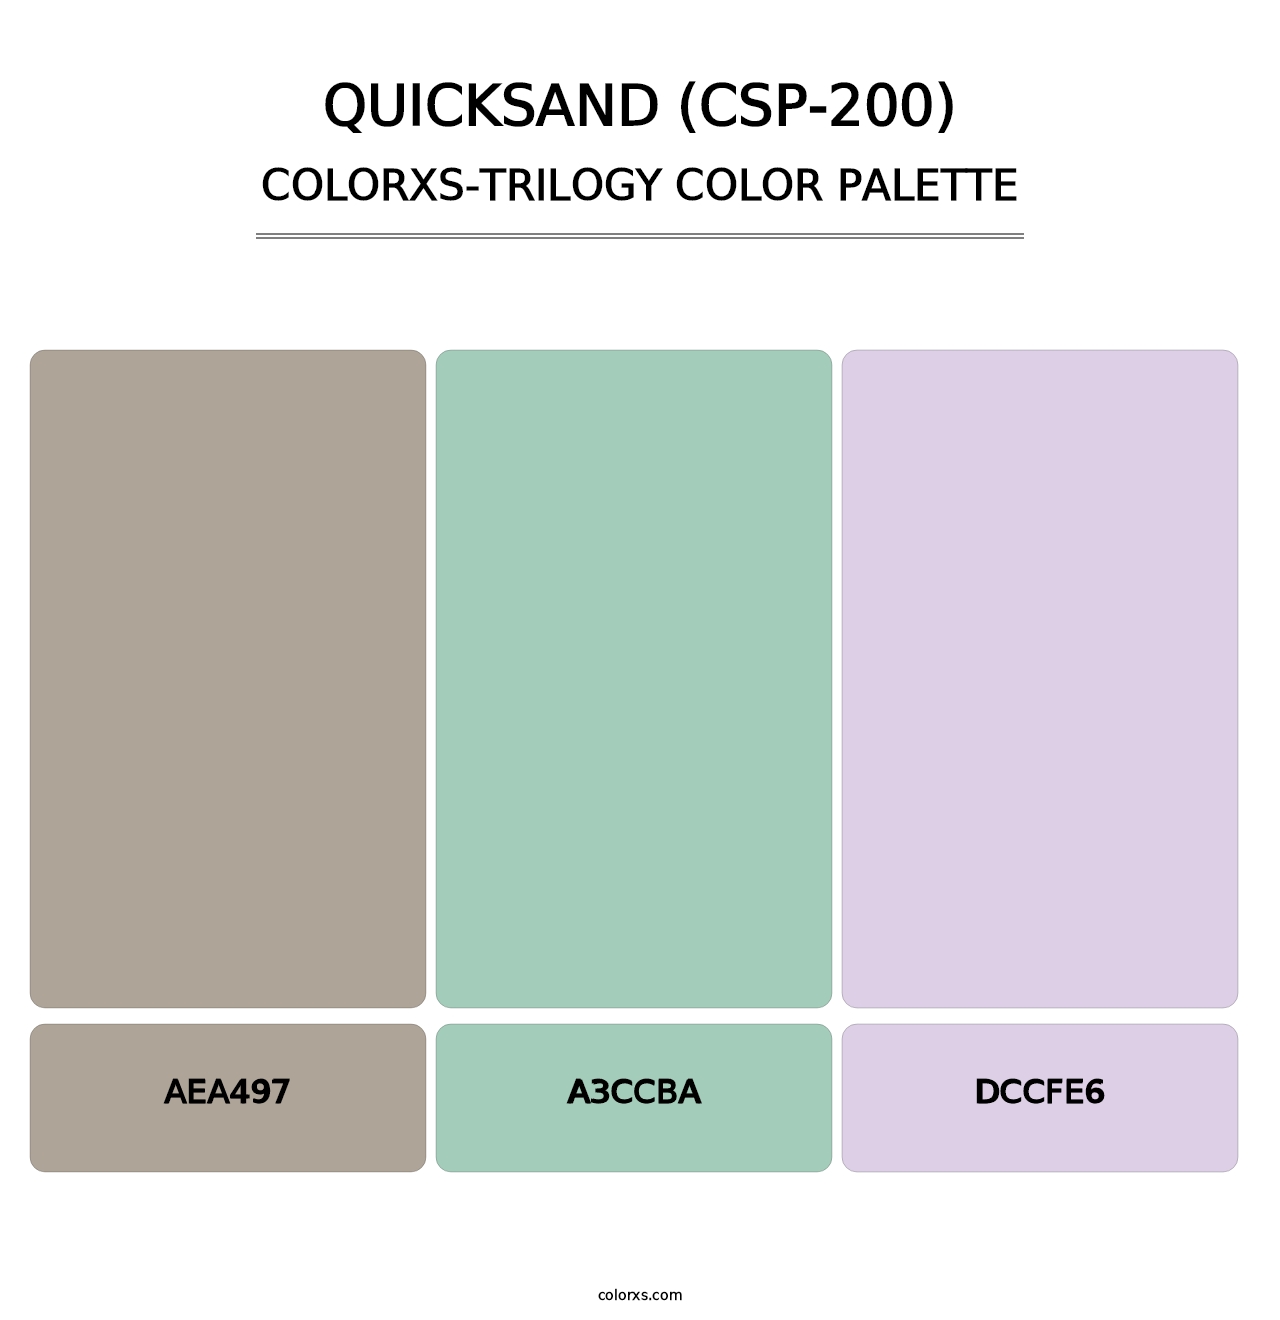 Quicksand (CSP-200) - Colorxs Trilogy Palette